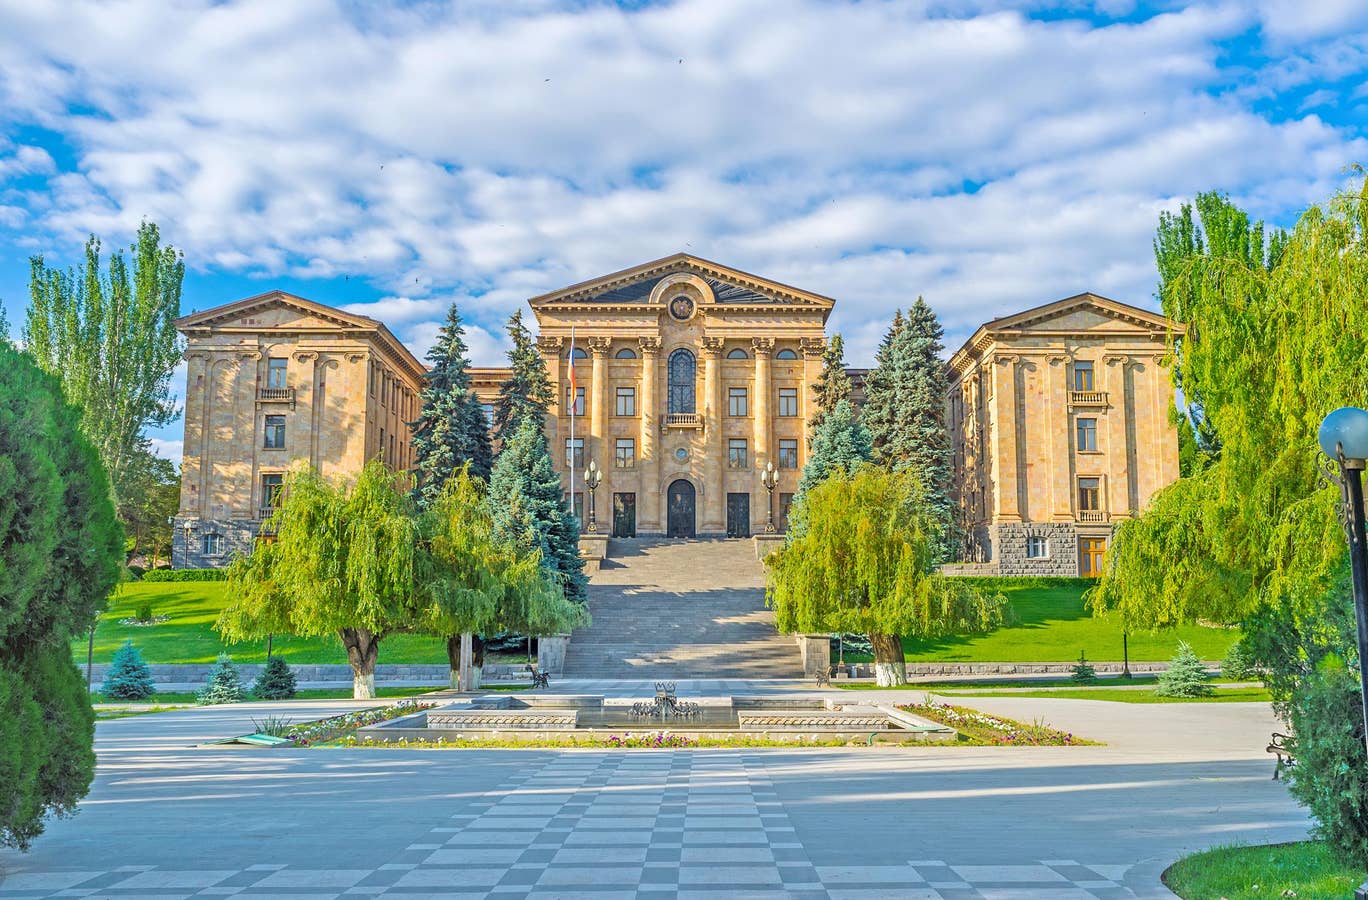 "Independent", Ermenistan parlamento binasını dünyanın 10 en güzel parlamento binaları listesine aldı